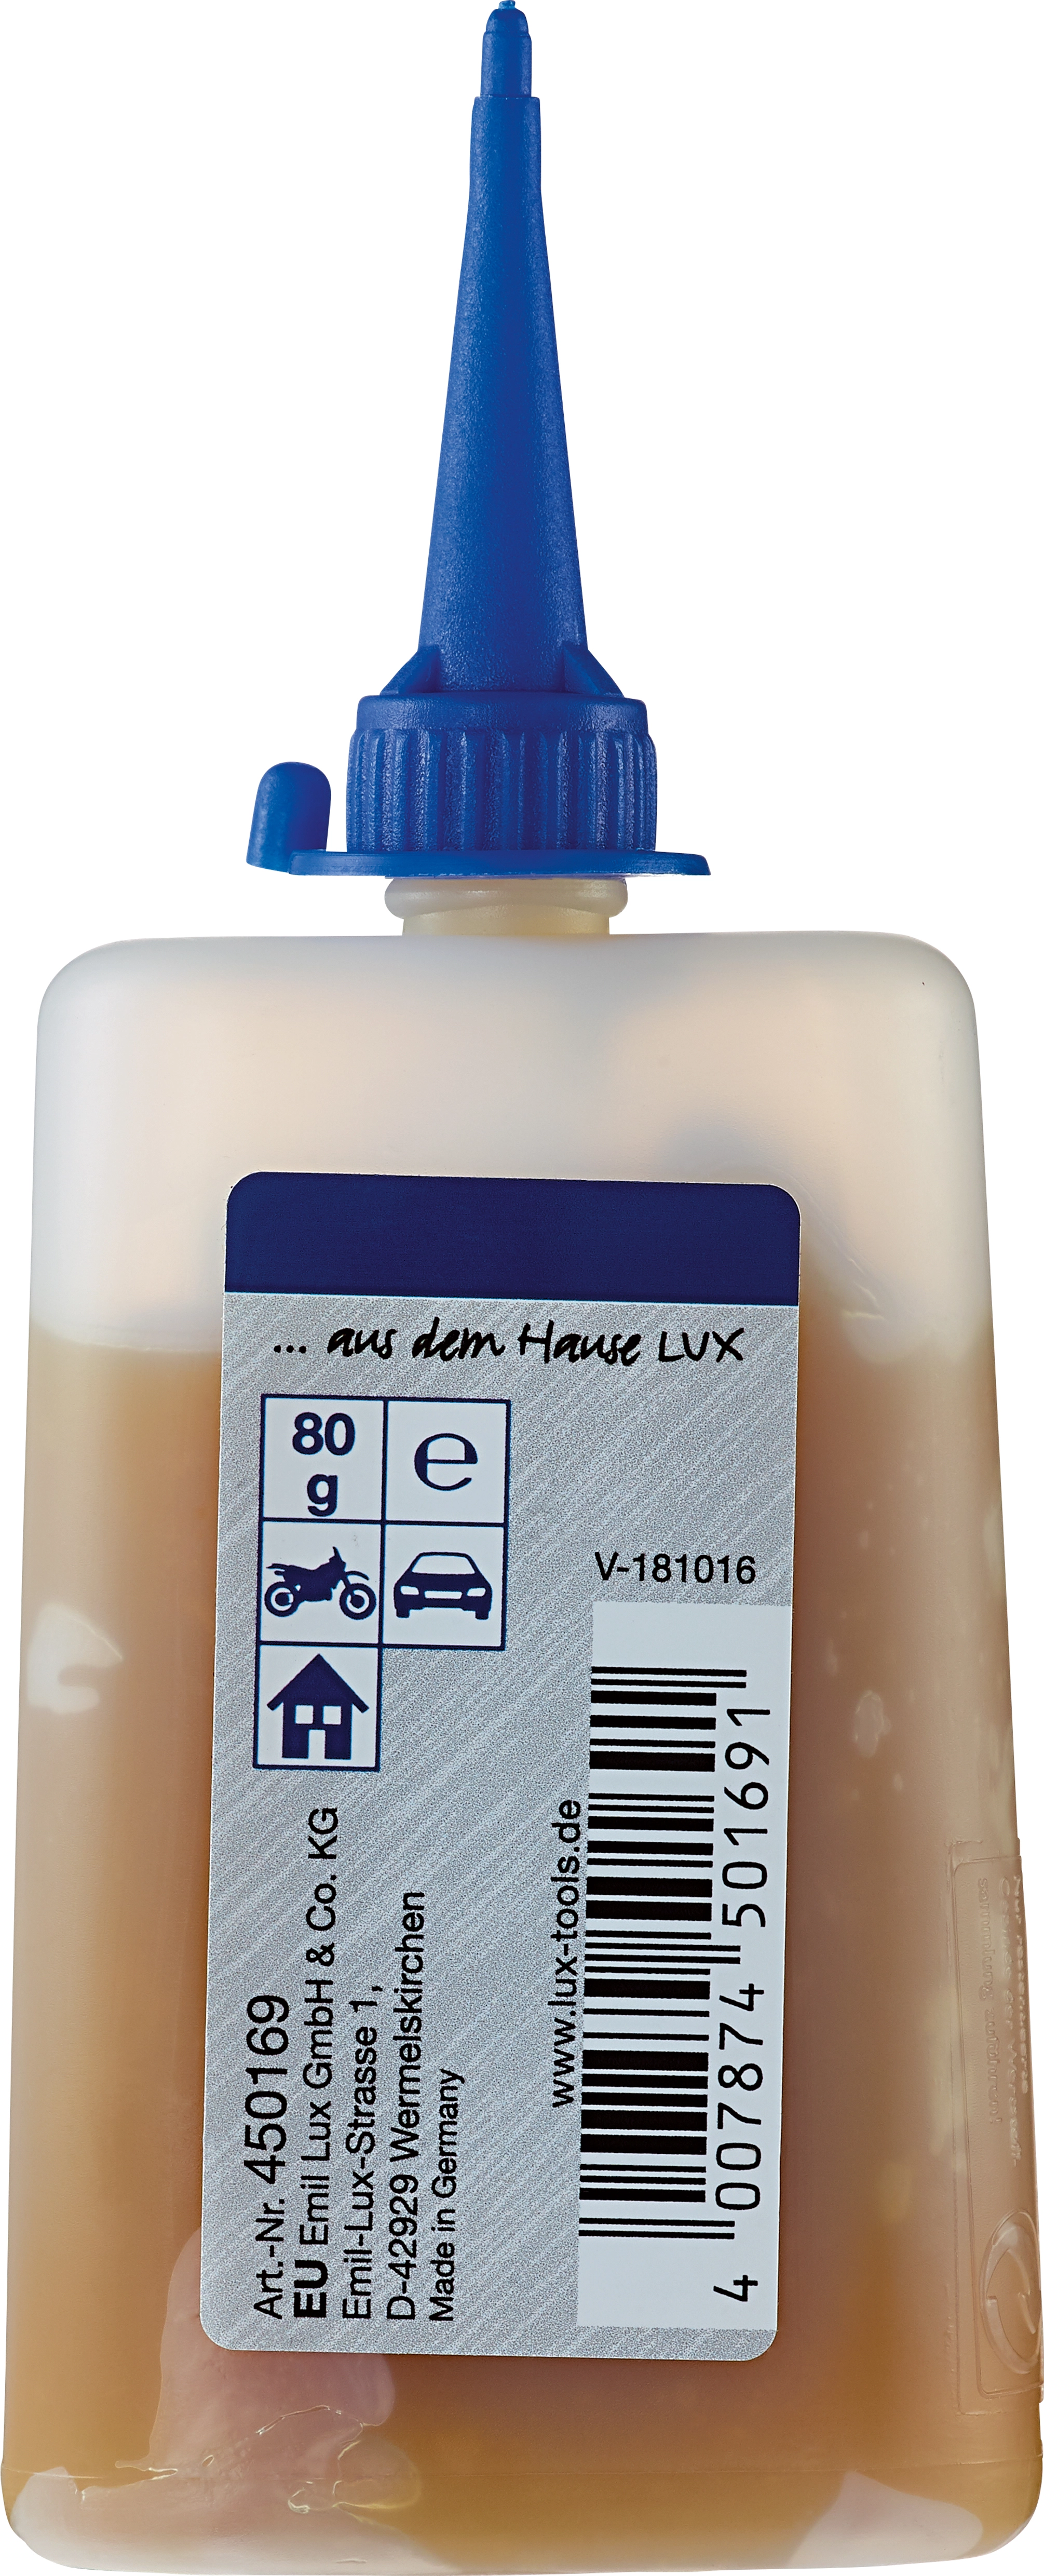 LUX Ölwechsel-Service Kit 6-teilig kaufen bei OBI